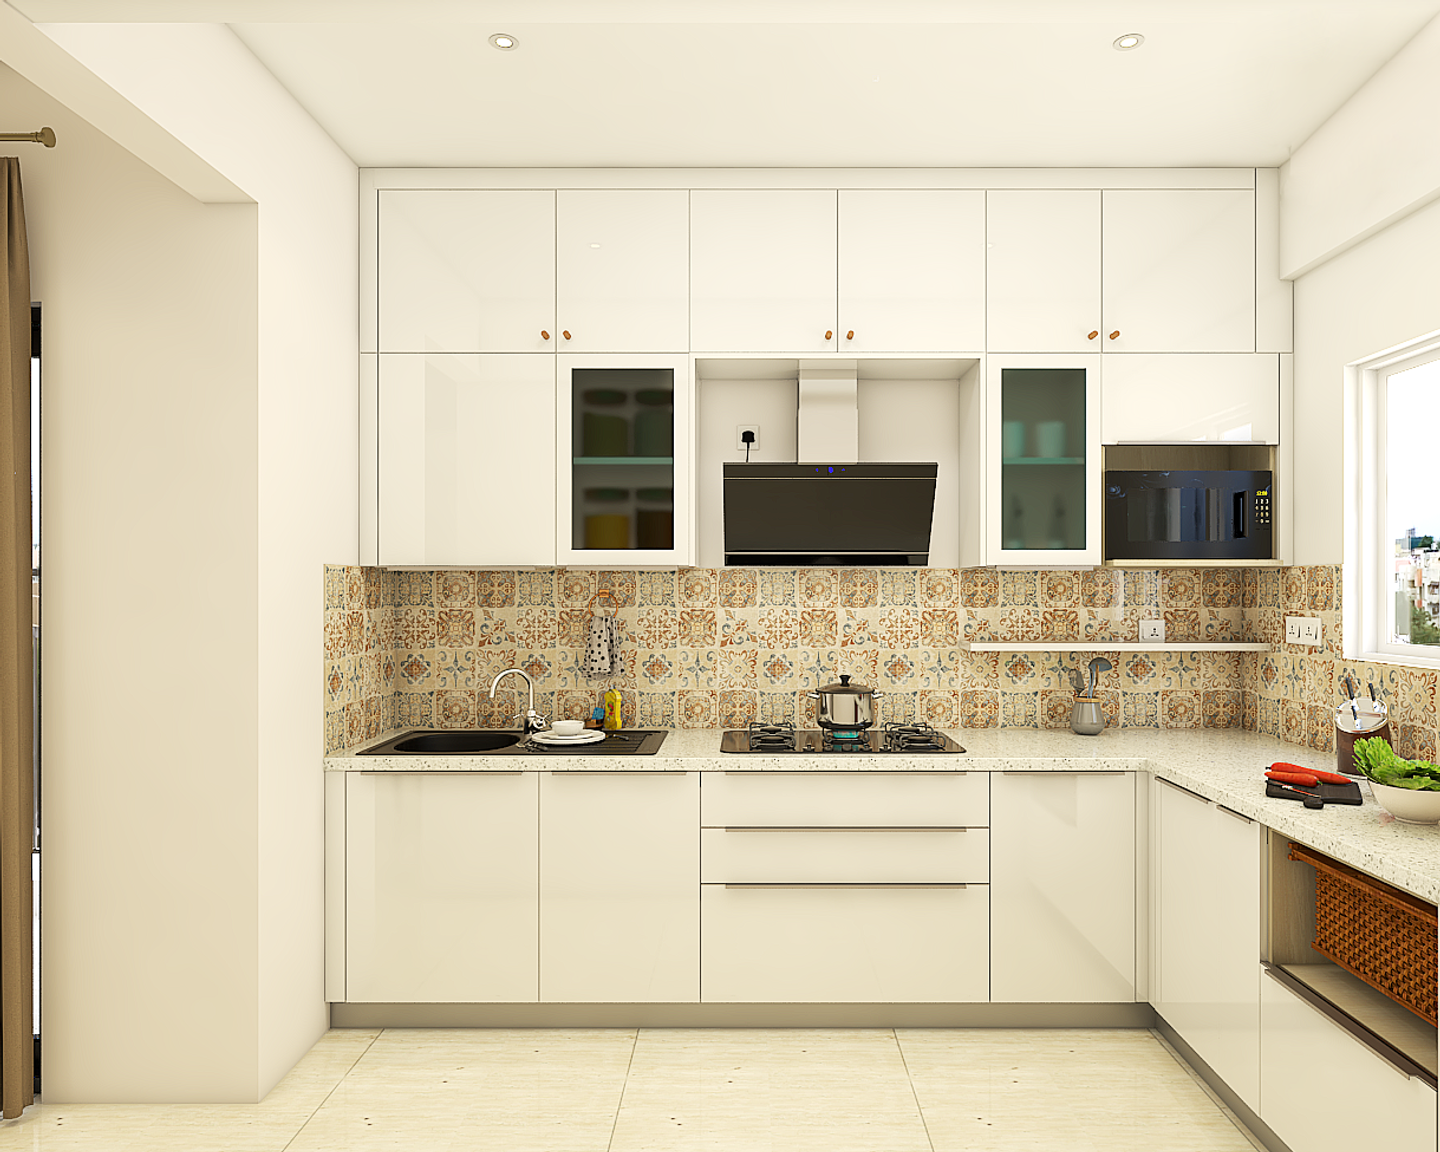 Spacious Kitchen Design With White Theme - Livspace